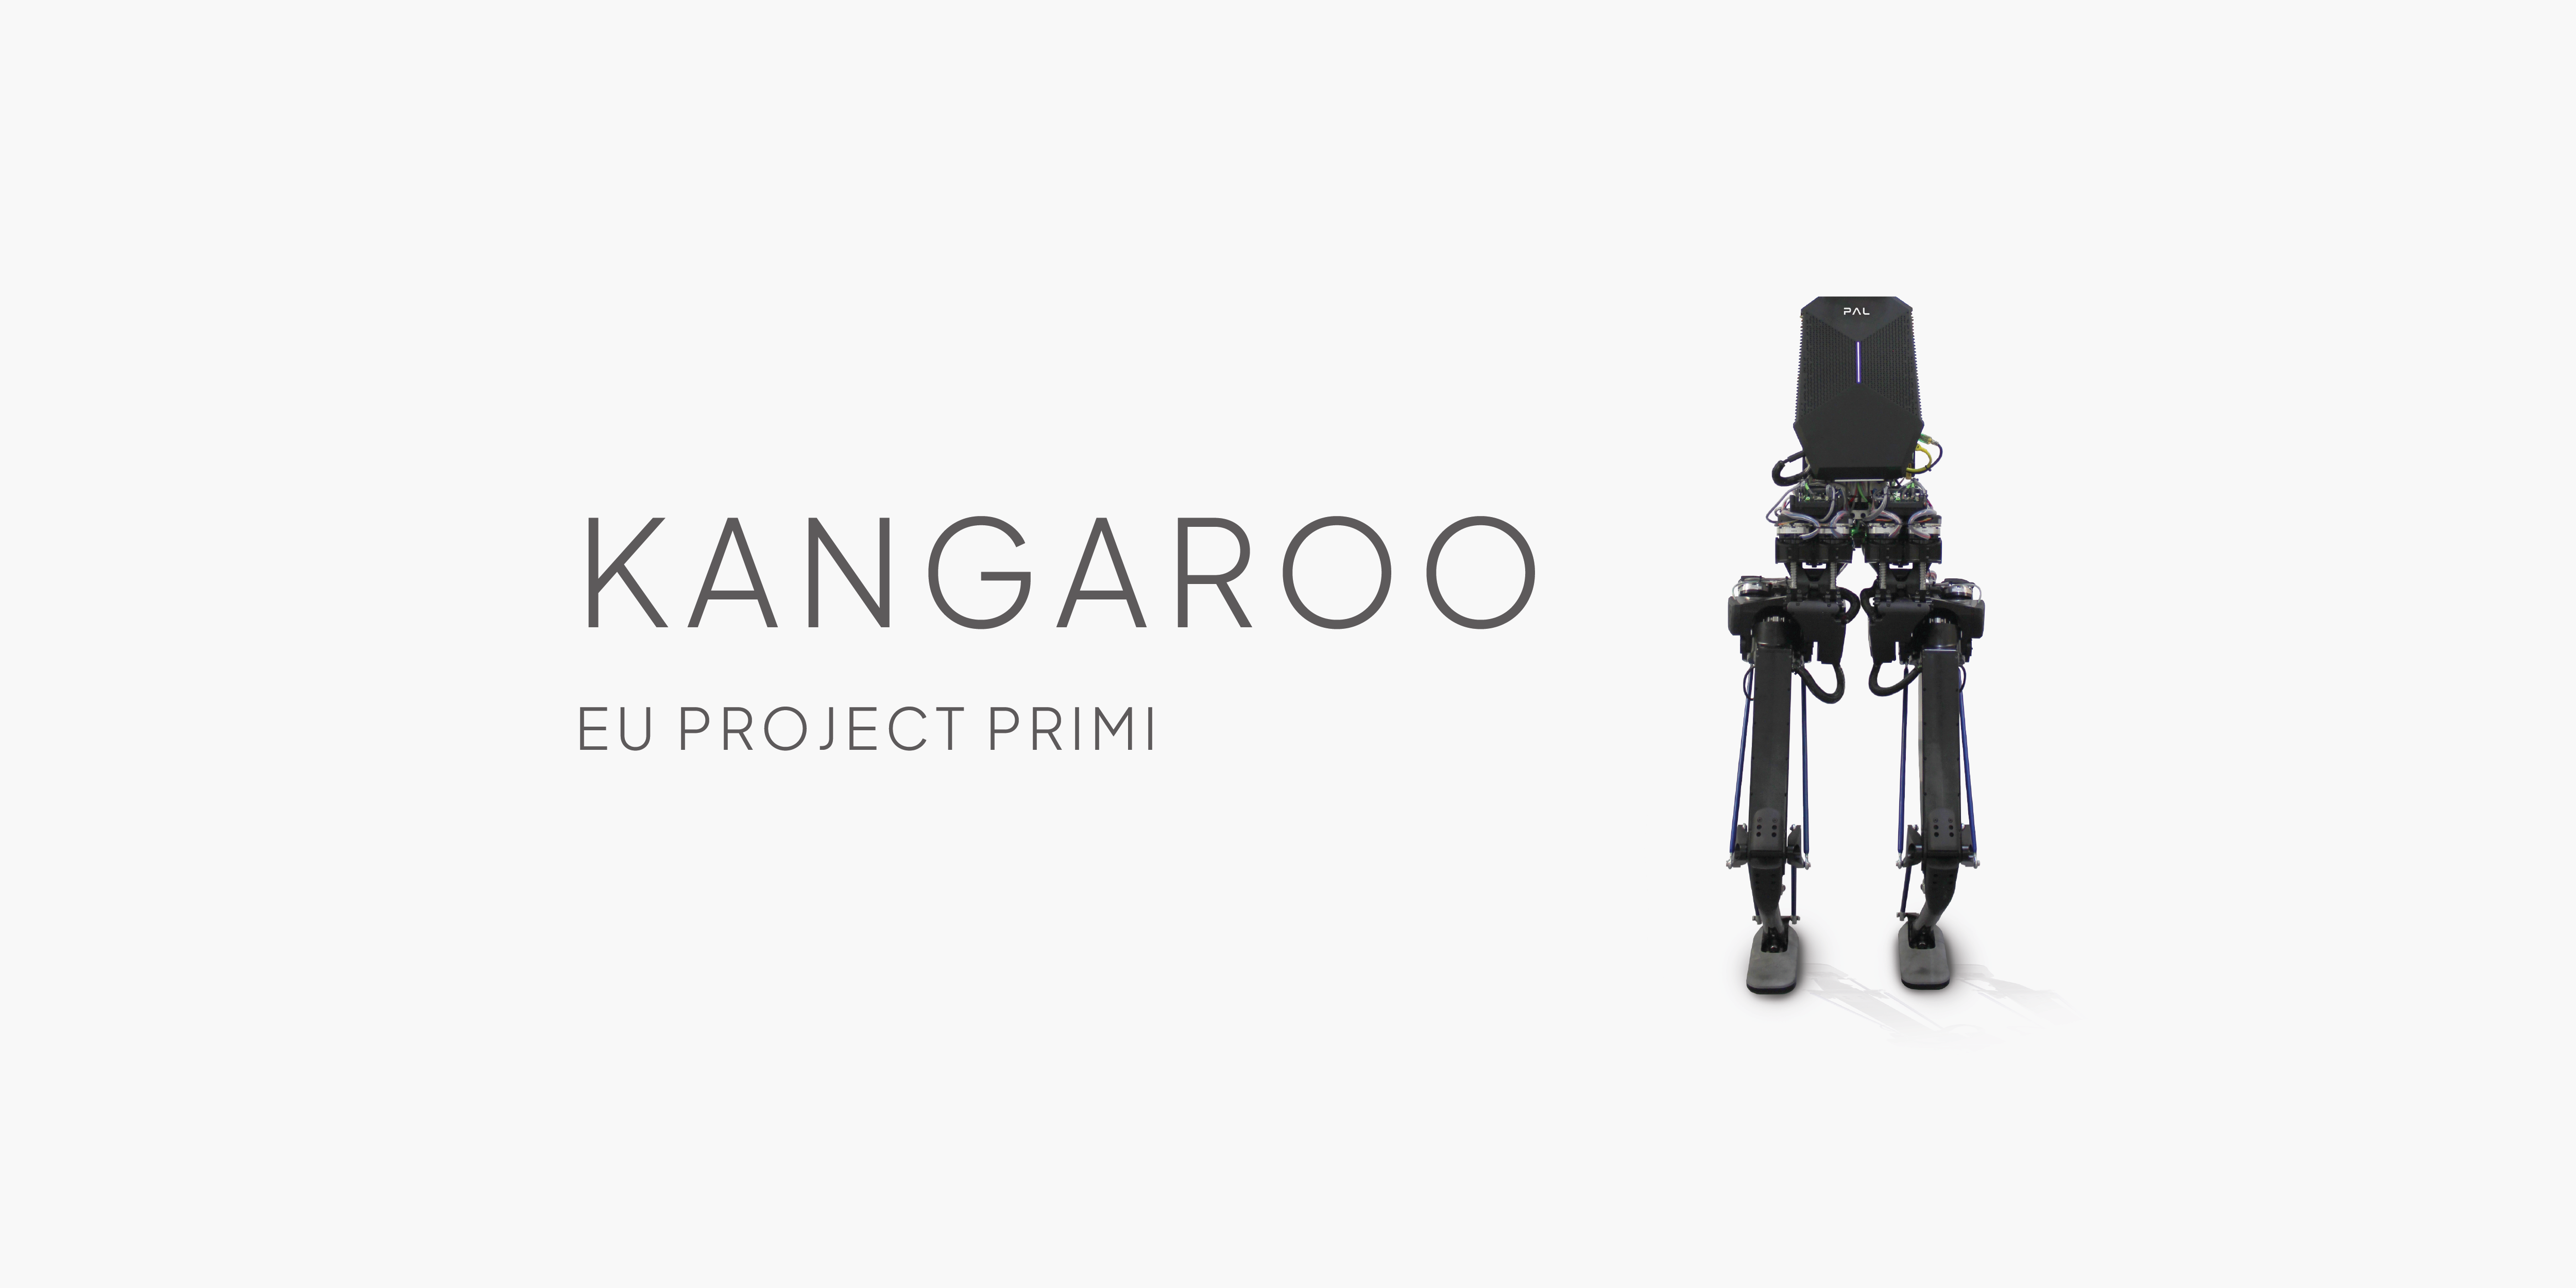 El Robot Kangaroo se une al proyecto europeo PRIMI